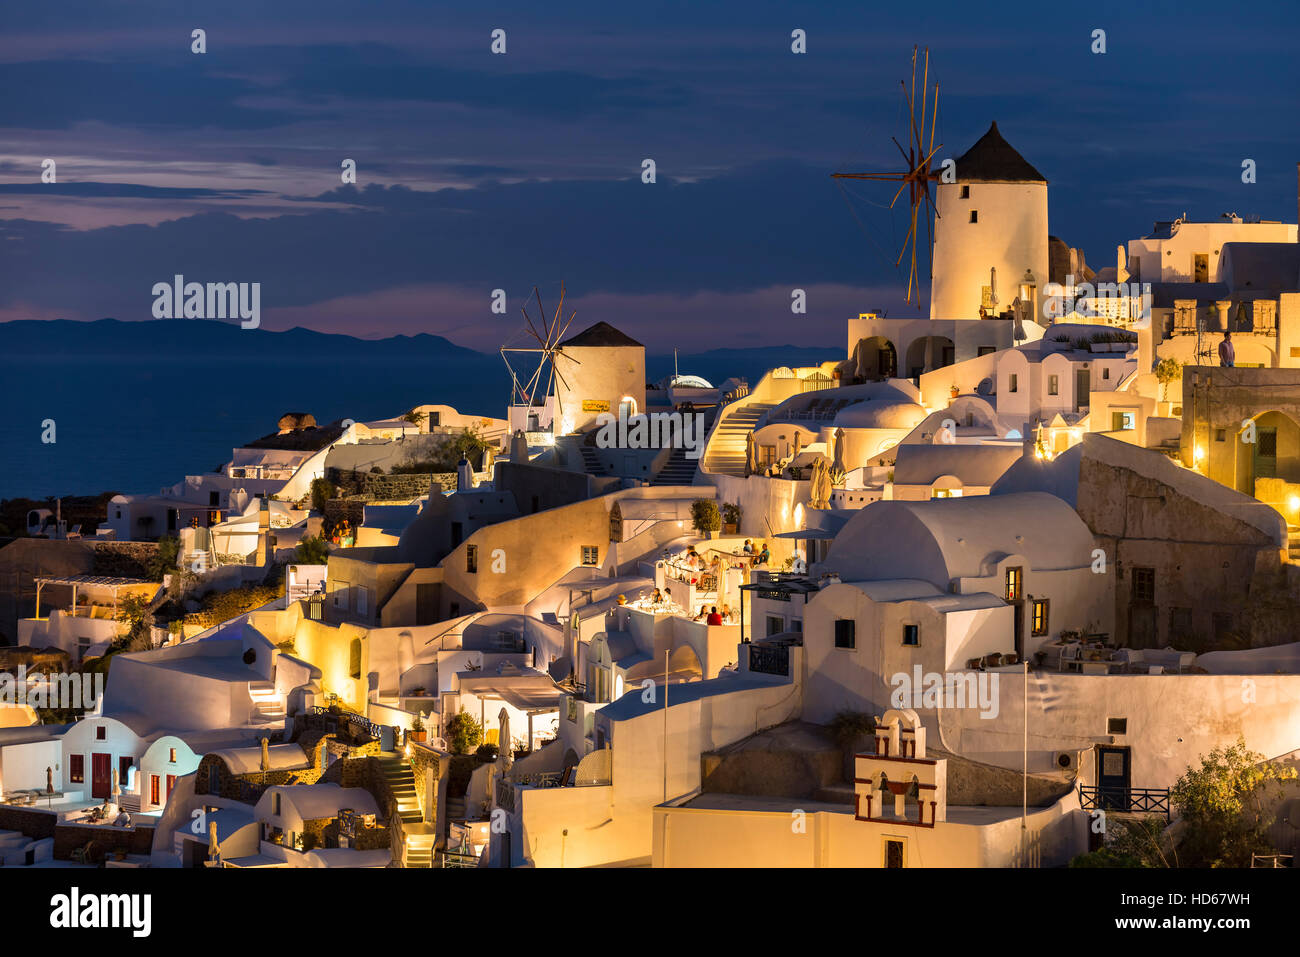 La ville, moulins à vent, lumière du soir, Oia, Santorini, Cyclades, Grèce Banque D'Images